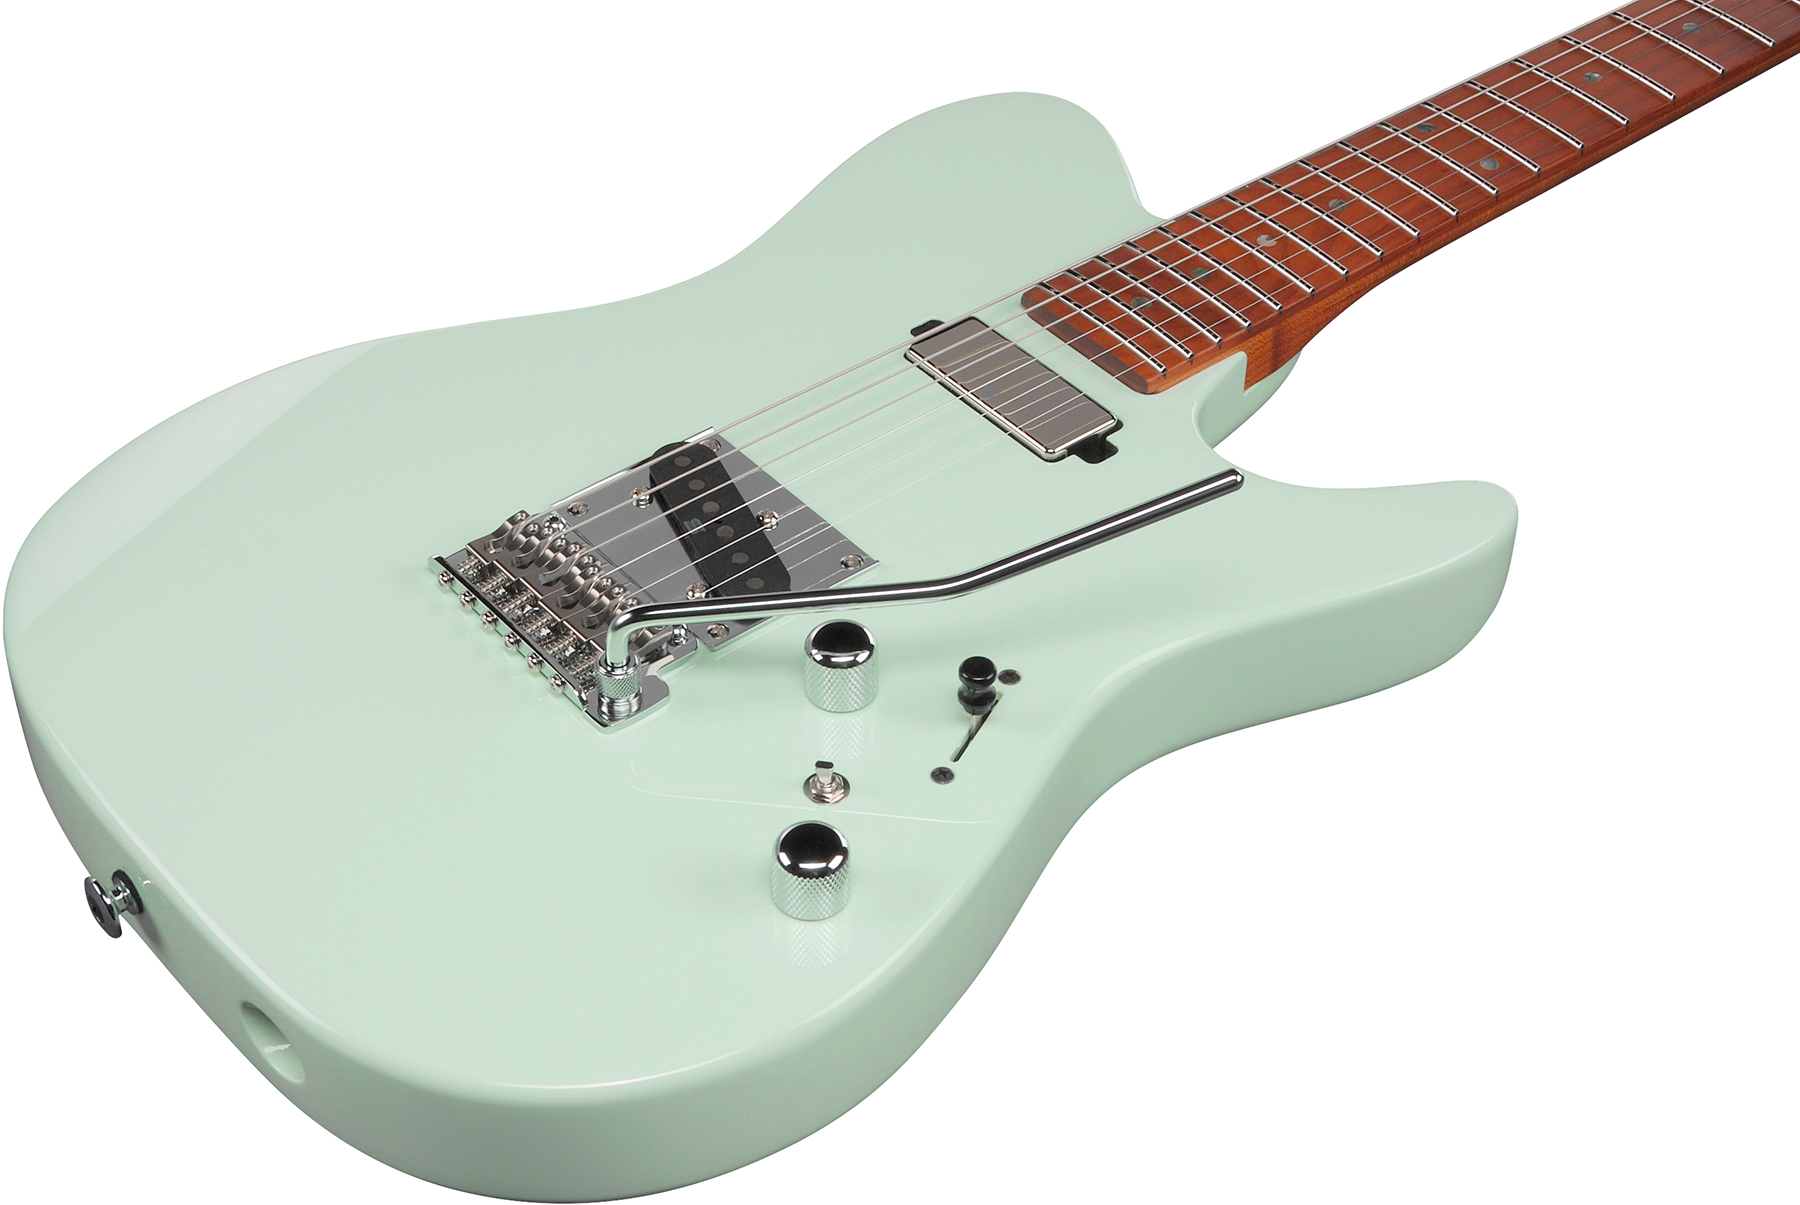 Ibanez Azs2200 Mgr Prestige Jap Smh Seymour Duncan Trem Mn - Mint Green - E-Gitarre in Teleform - Variation 2